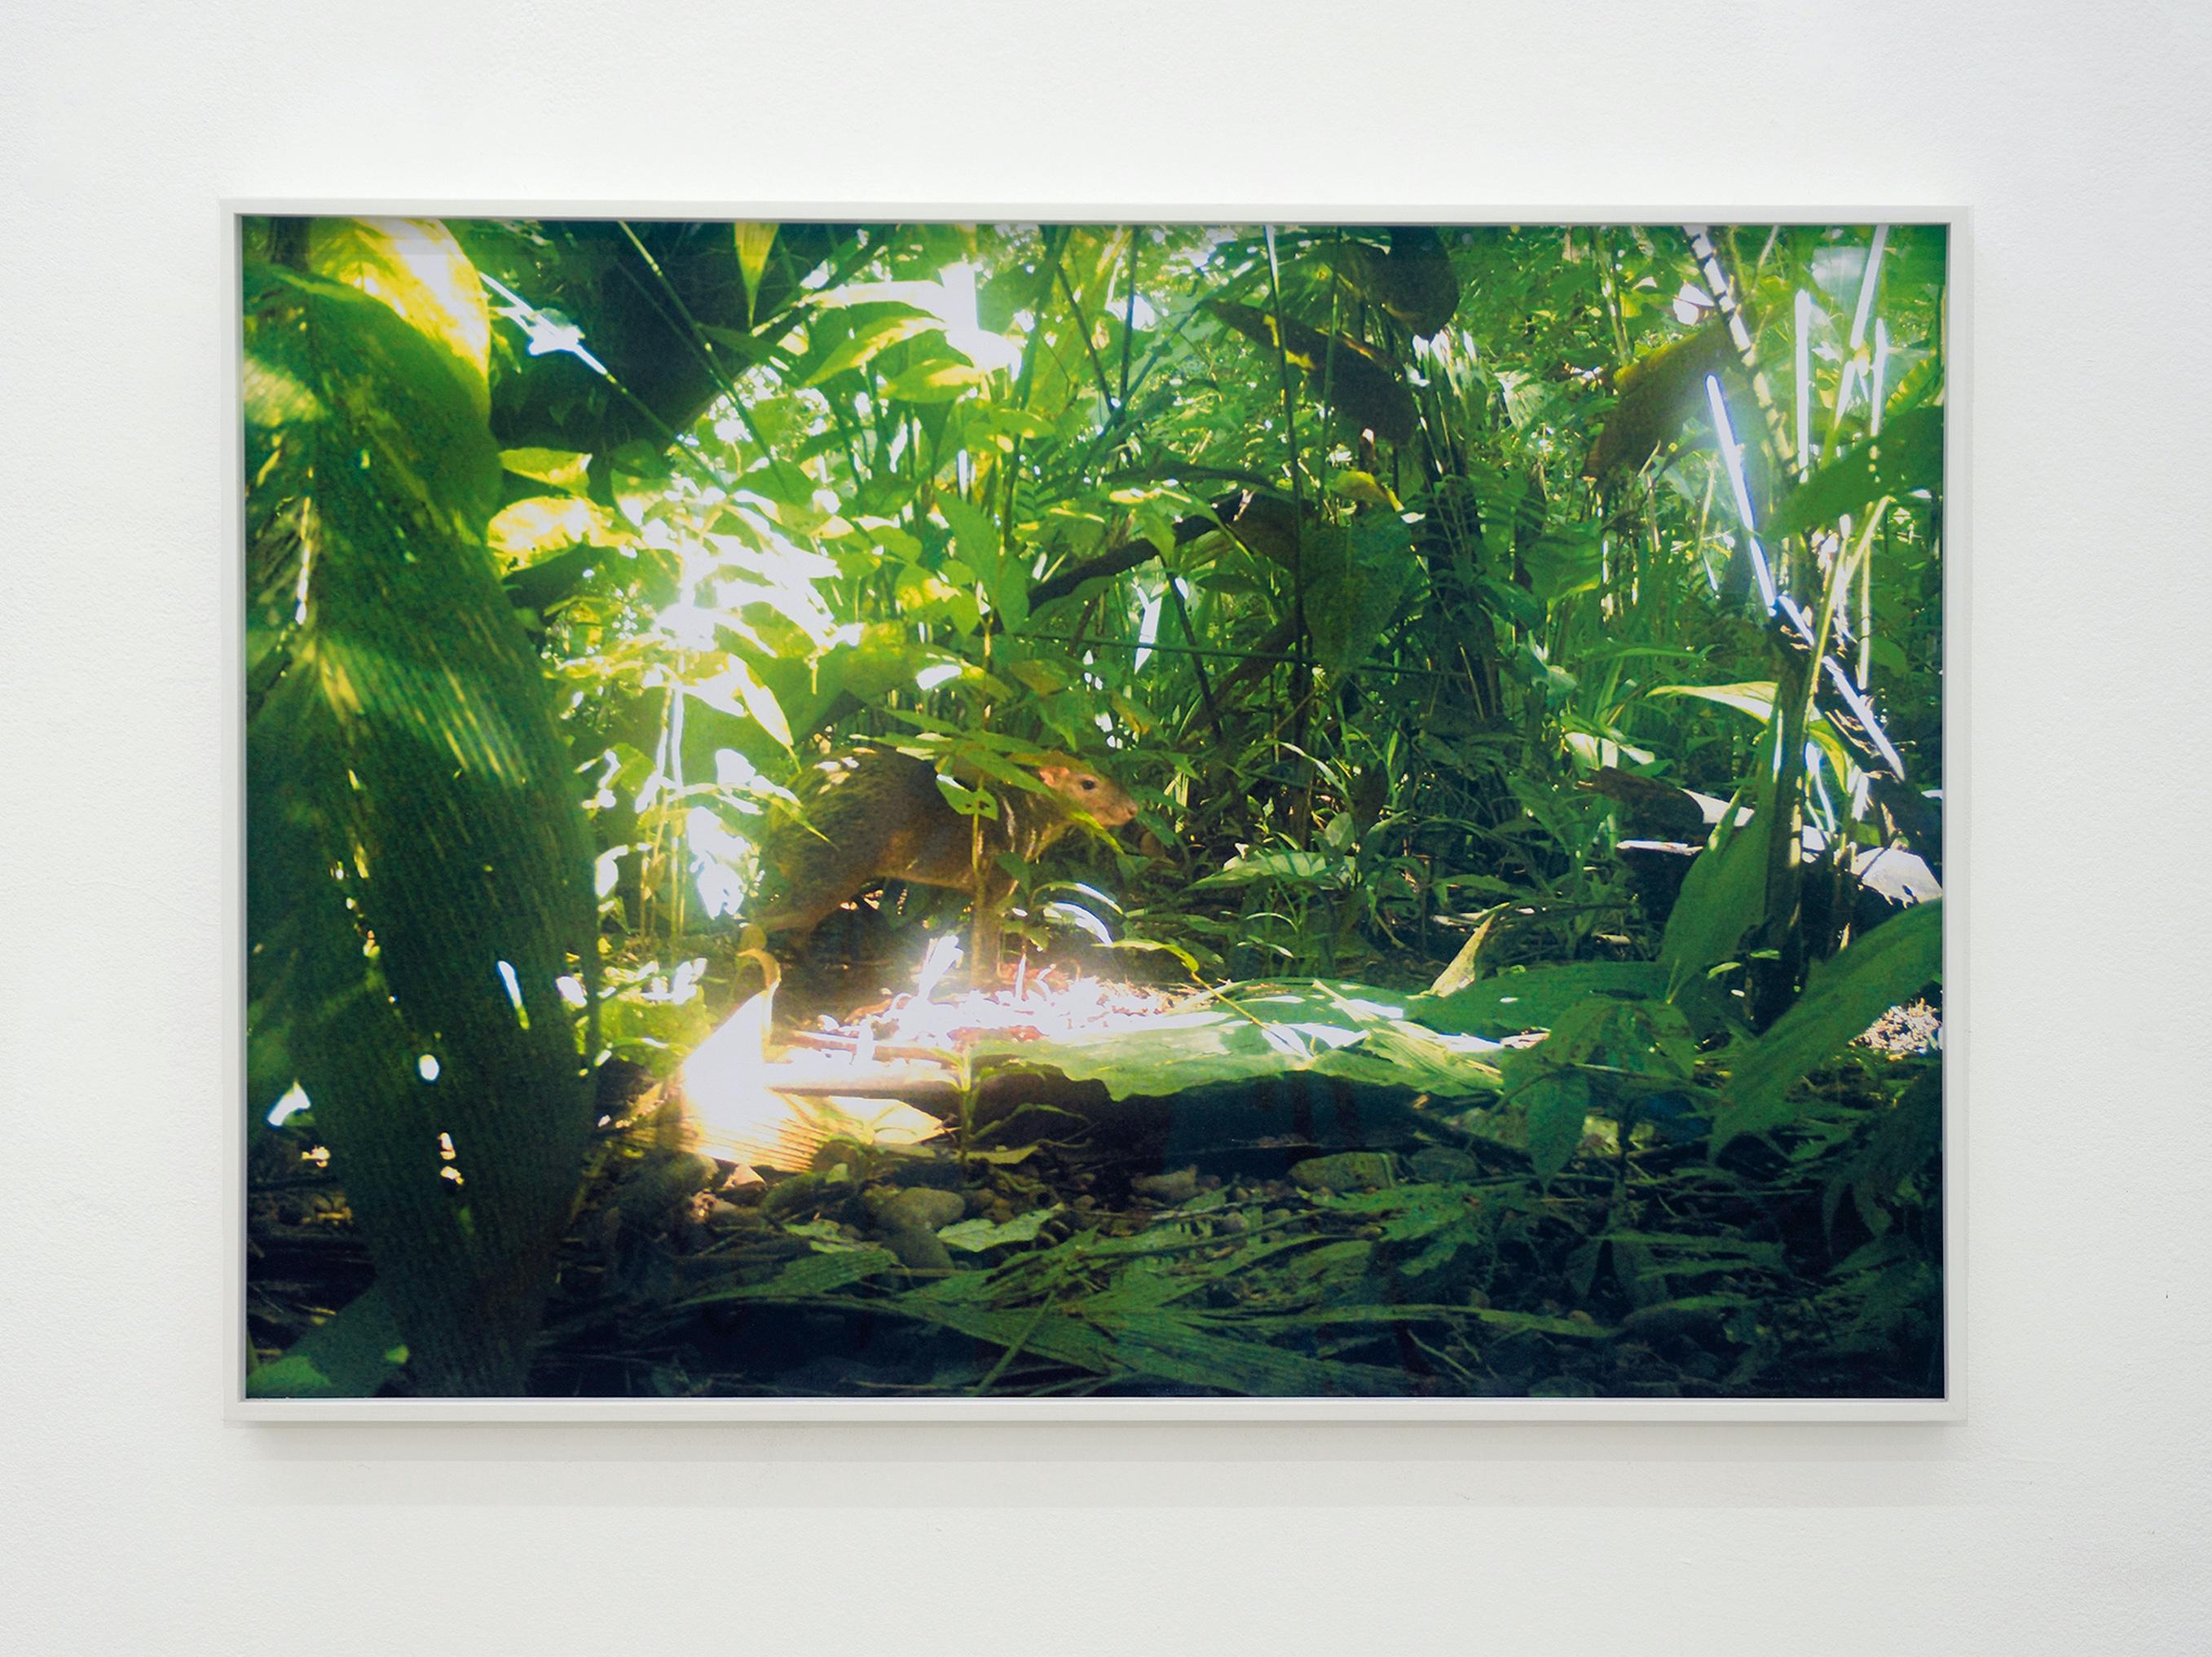 Kamerafalle (Aguti) Ed. 2/3 - Zeitgenössische Dschungel-Landschaftsfotografie  (Grün), Figurative Photograph, von Tina Ribarits